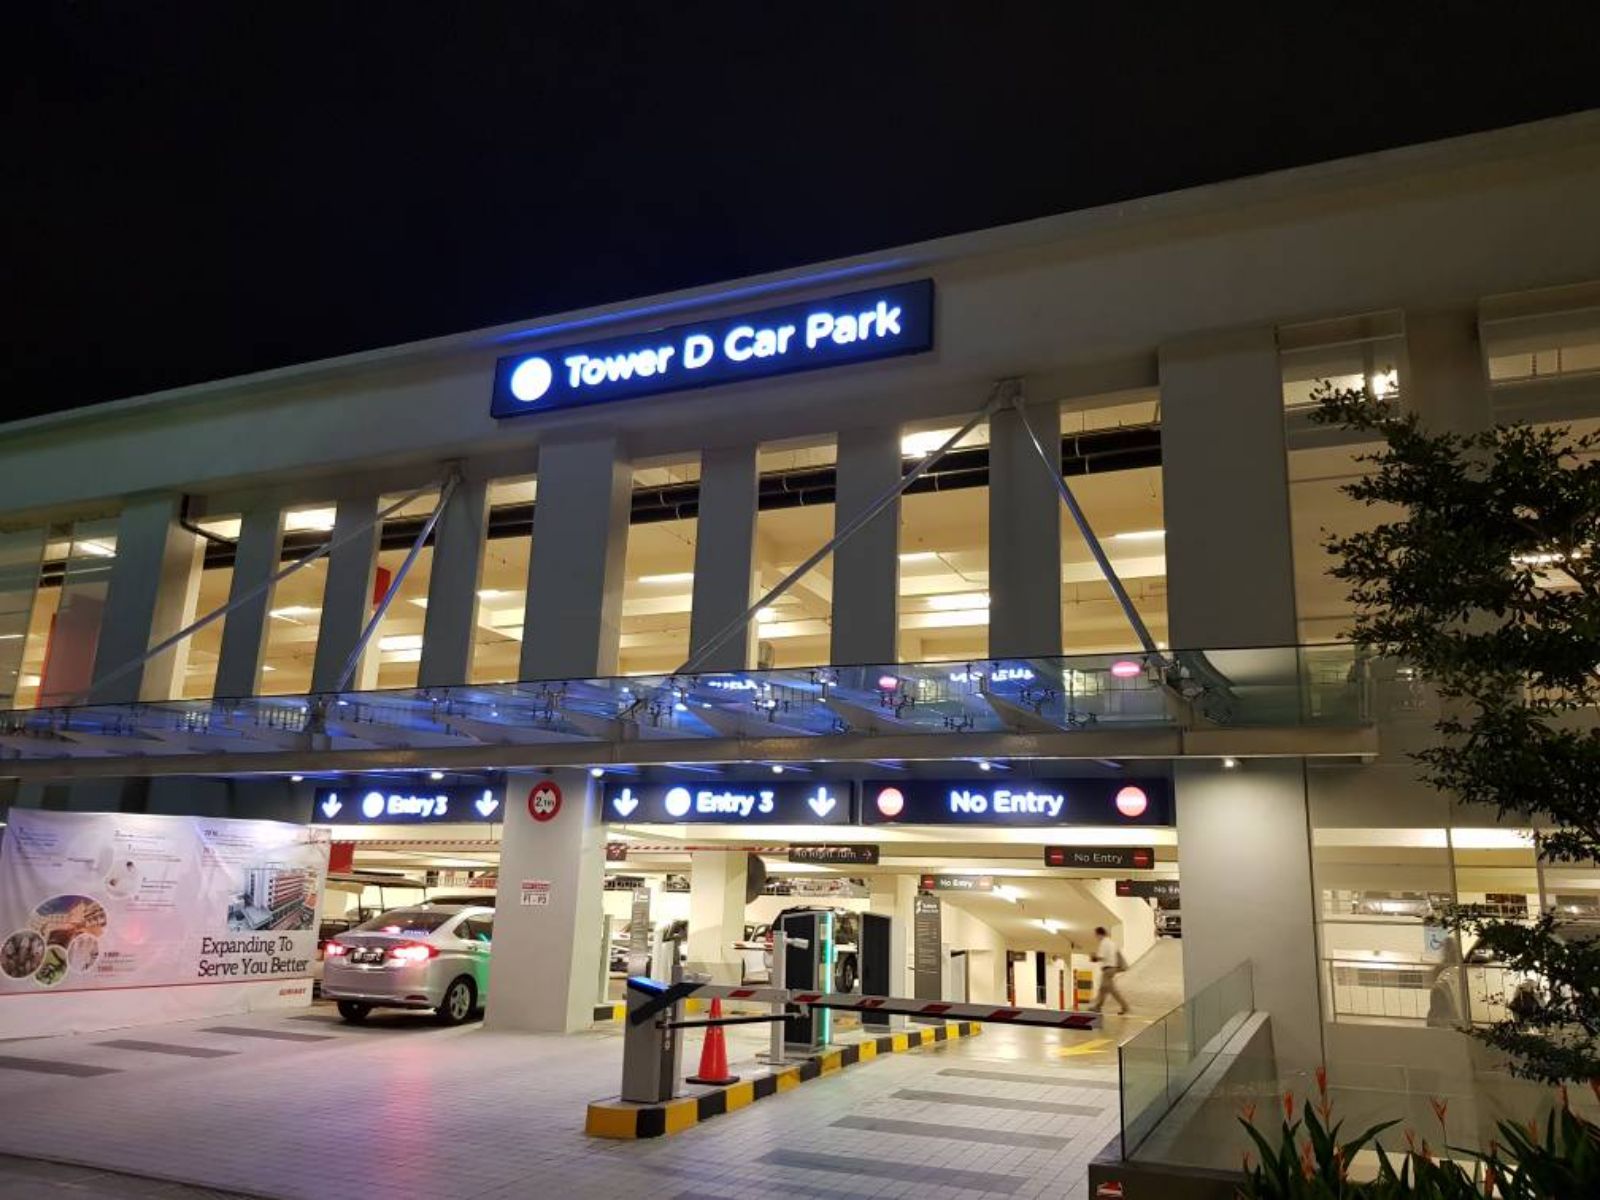 Sunway Group Car park LED normal light box type at Subang